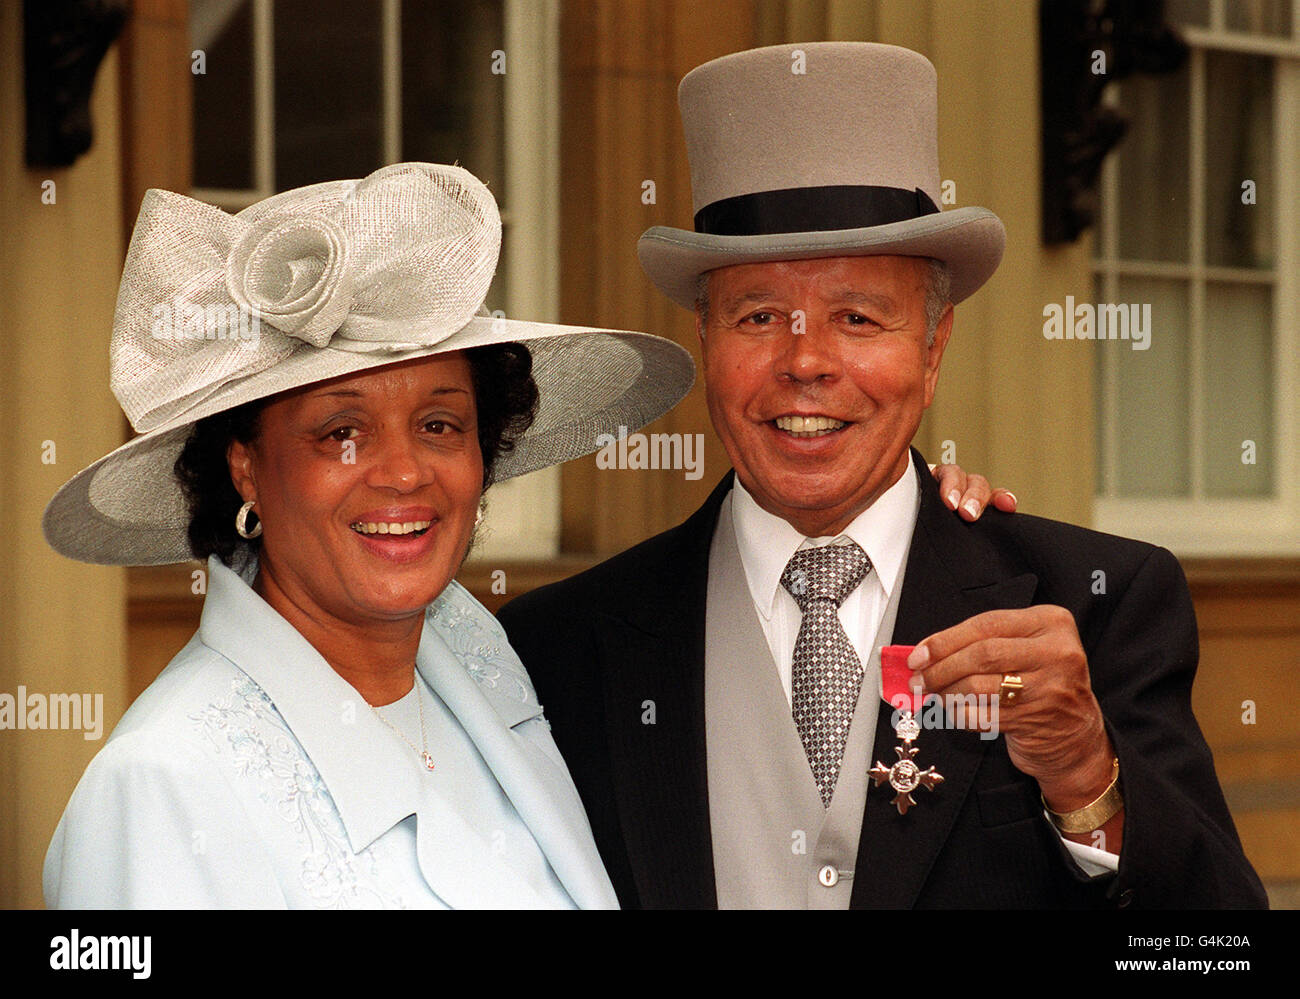 Il comico Charles Williams moglie sua Janice, dopo aver ricevuto un MBE (membro dell'Impero britannico) dal Principe di Galles durante una cerimonia di investitura a Buckingham Palace. Foto Stock